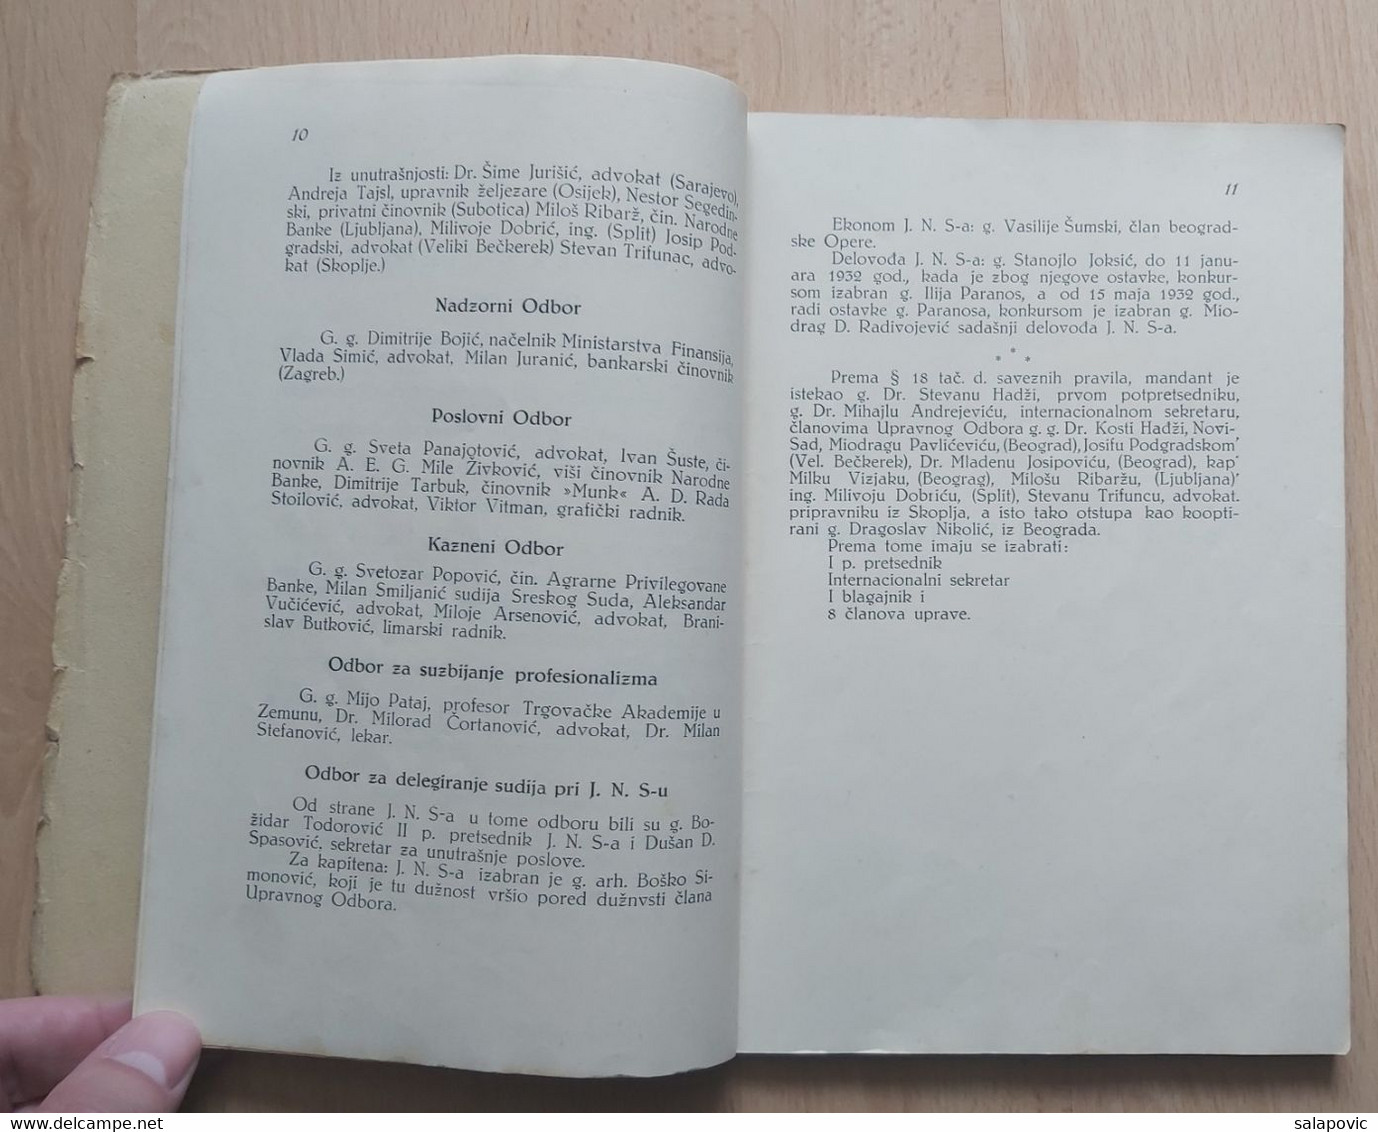 IZVJEŠTAJ O RADU JUGOSLAVENSKOG NOGOMETNOG SAVEZA 1932, YUGOSLAV FOOTBALL FEDERATION - Livres